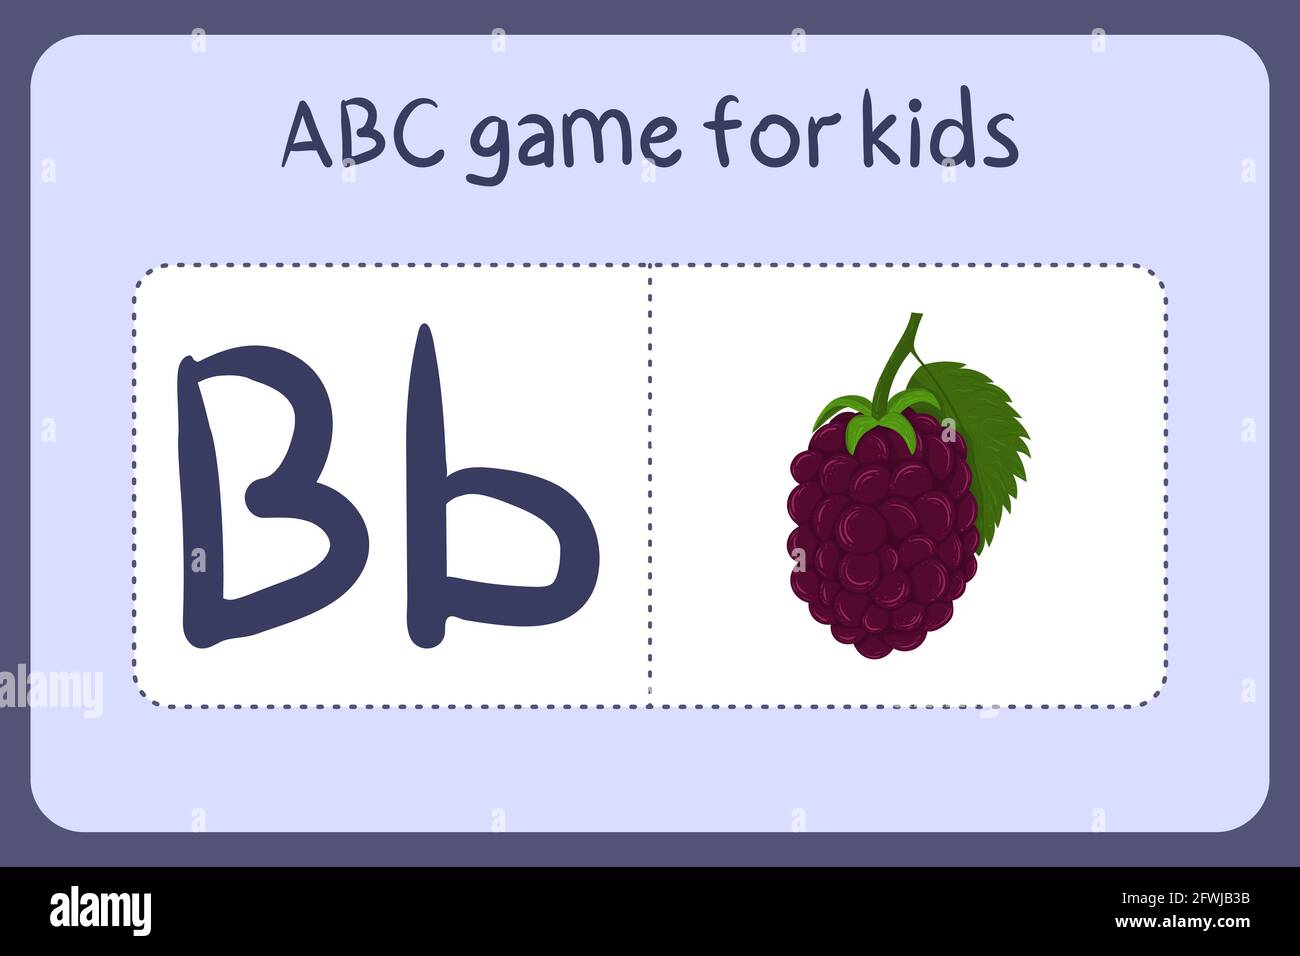 Kind Alphabet Mini-Spiele im Cartoon-Stil mit dem Buchstaben B - Brombeere. Vektor-Illustration für Spiel-Design - Schneiden und spielen. Lerne abc mit Flash-Karten für Obst und Gemüse. Stock Vektor